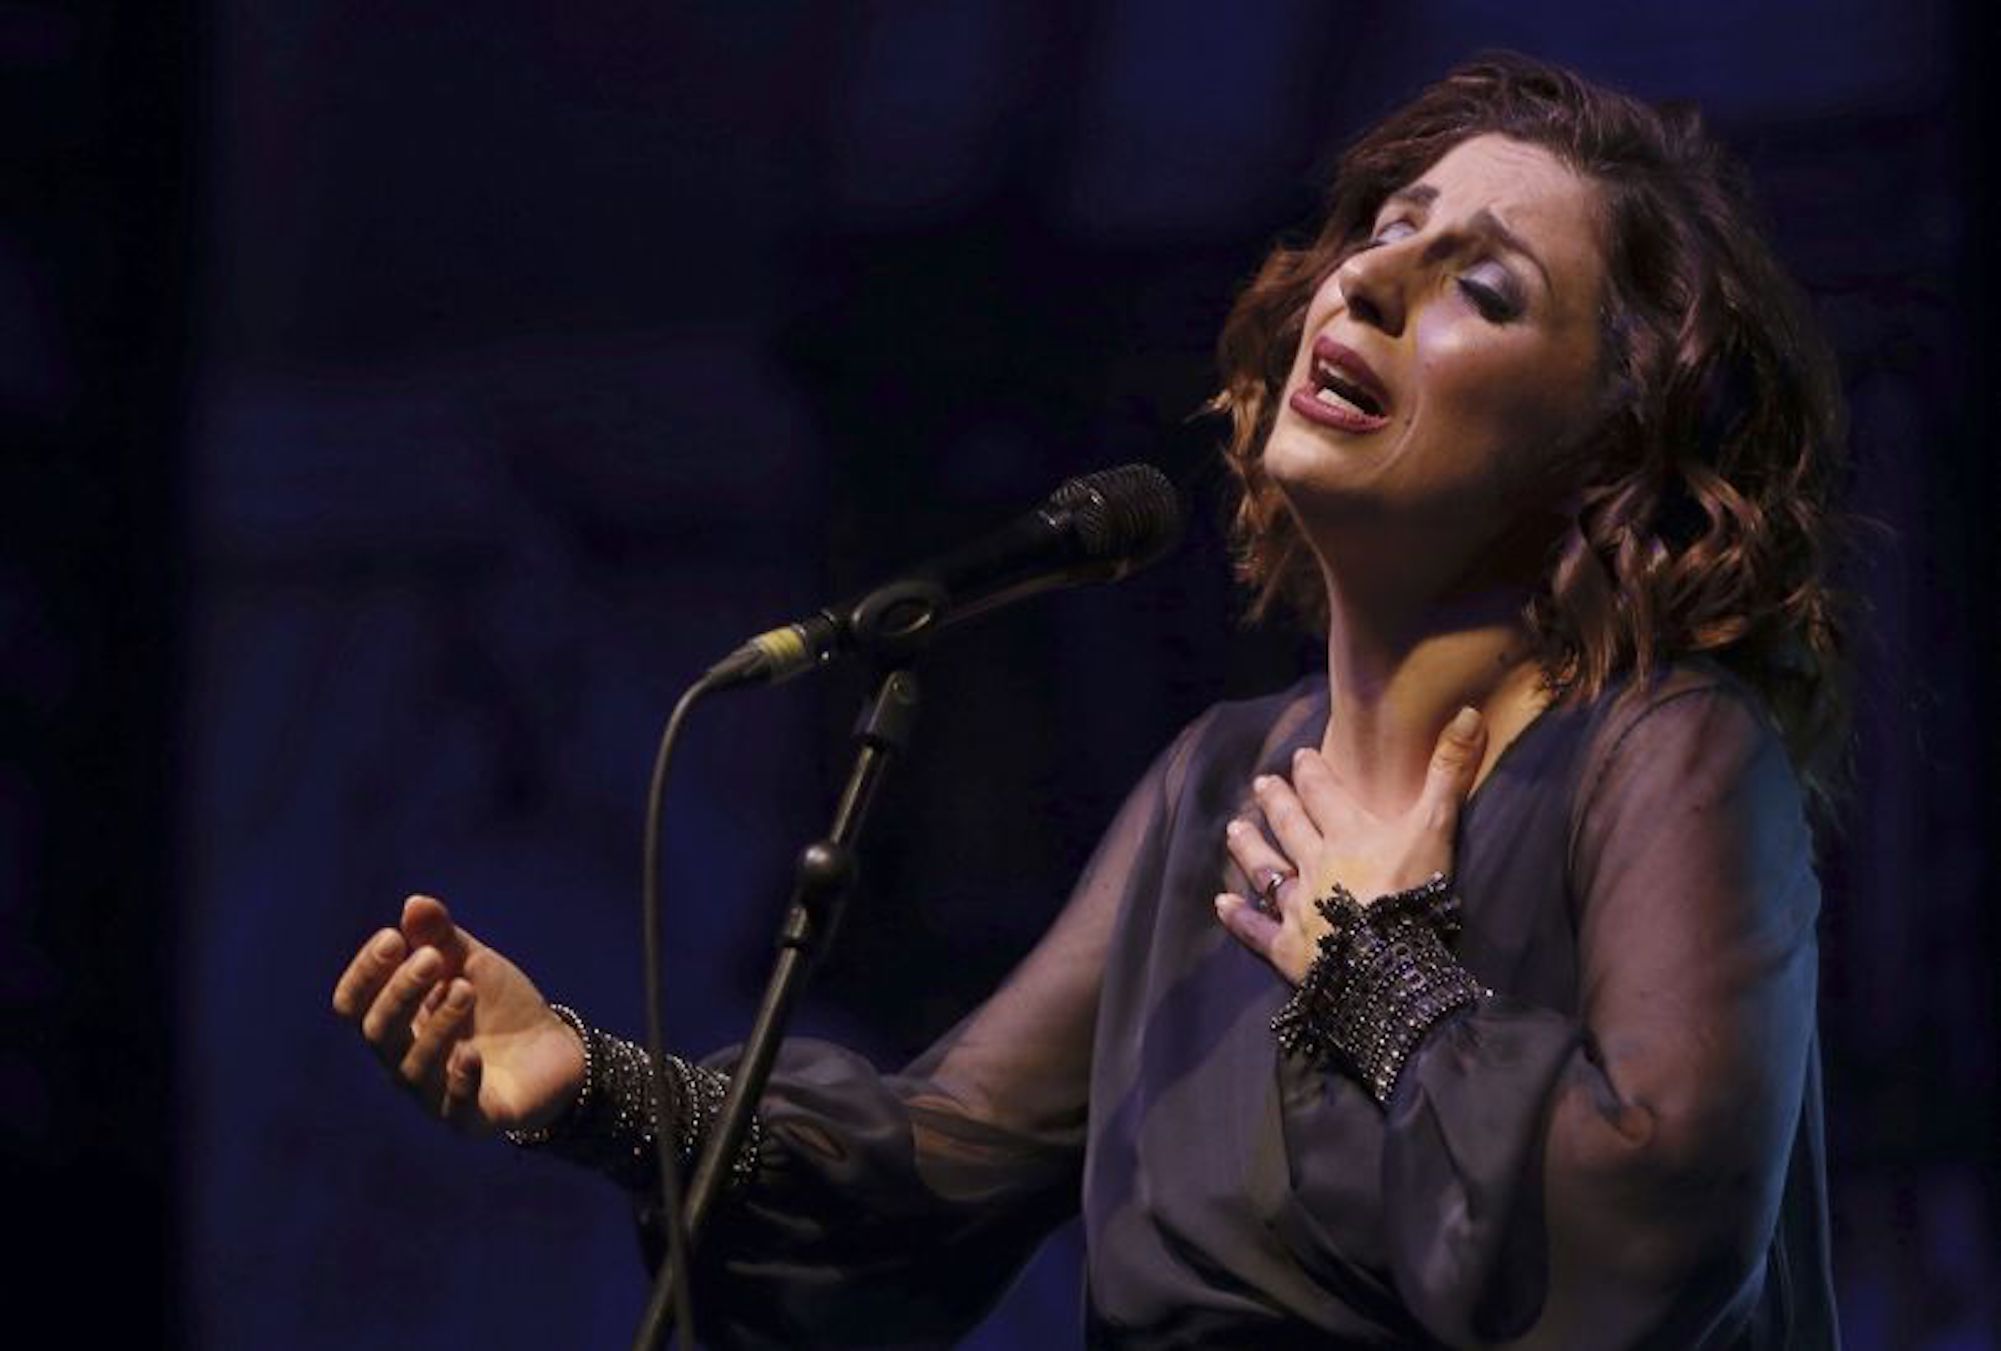 Fadista Katia Guerreiro apresenta sexta-feira o seu novo álbum “Sempre”